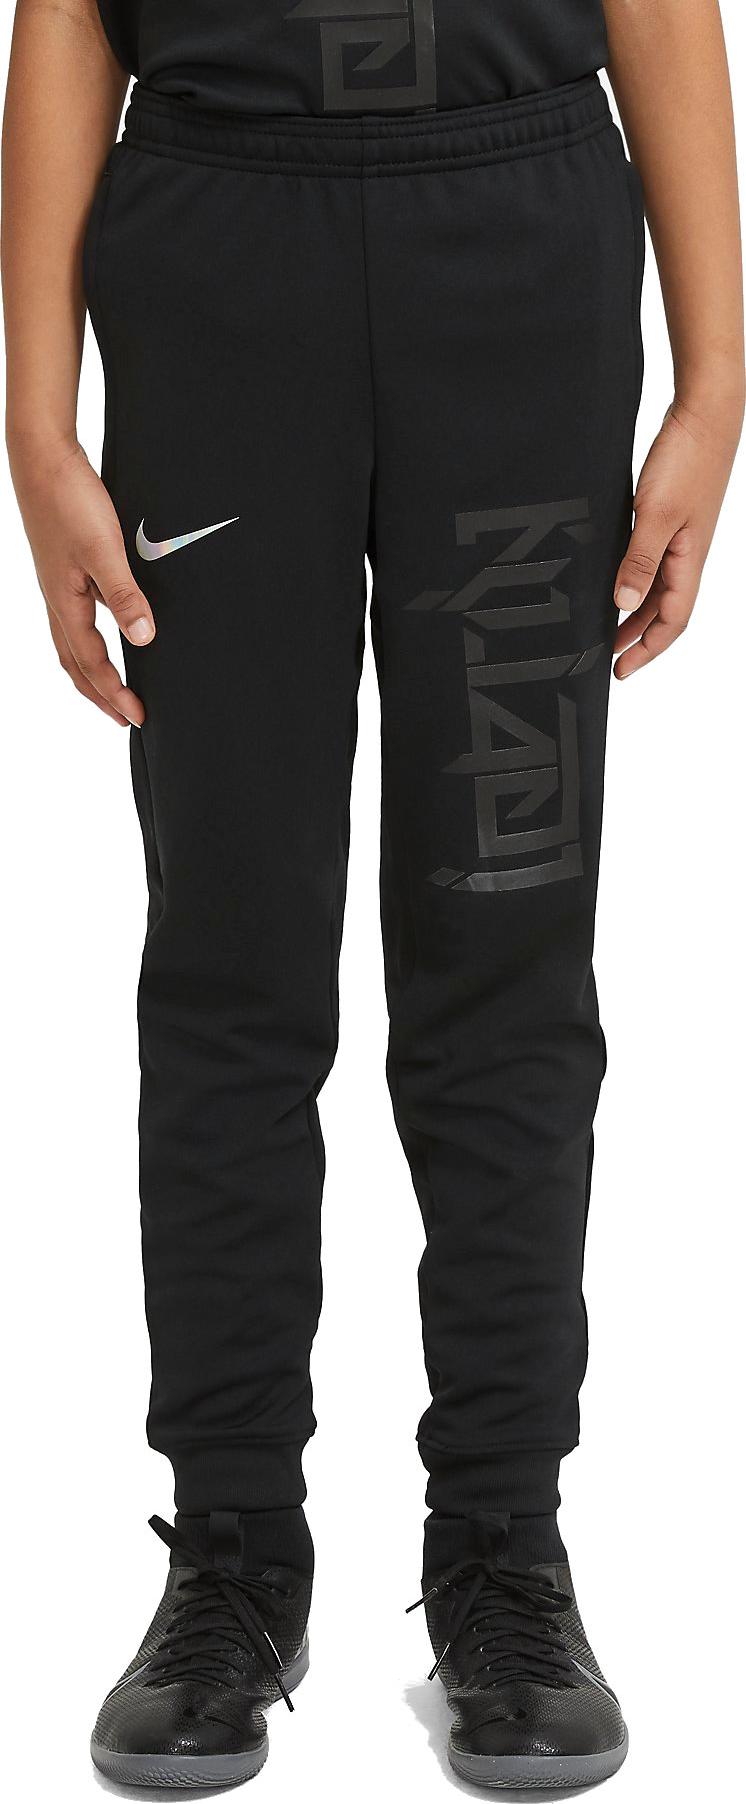 Pletené fotbalové kalhoty pro větší děti Nike Dri-FIT Kylian Mbappé